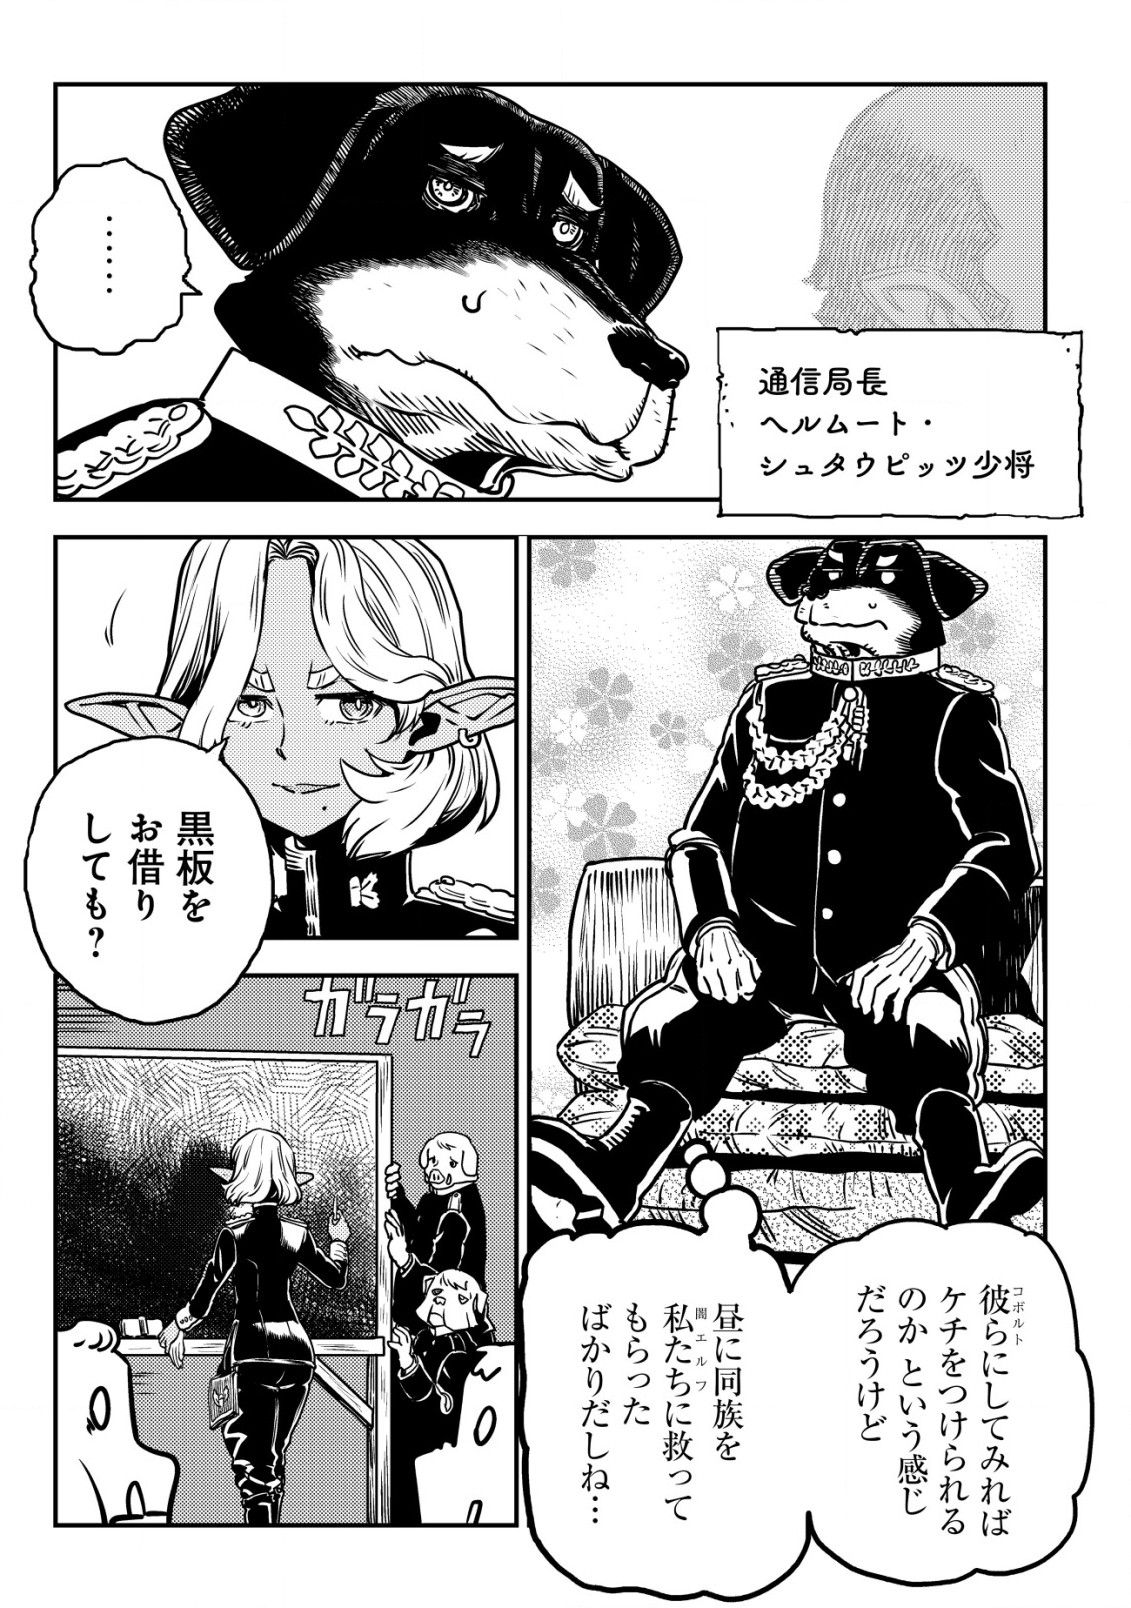 Orcsen Oukokushi – Yaban na Ooku no Kuni wa, Ikanishite Heiwa na Elf no Kuni wo Yakiharau ni Itatta ka - Chapter 5.2 - Page 18